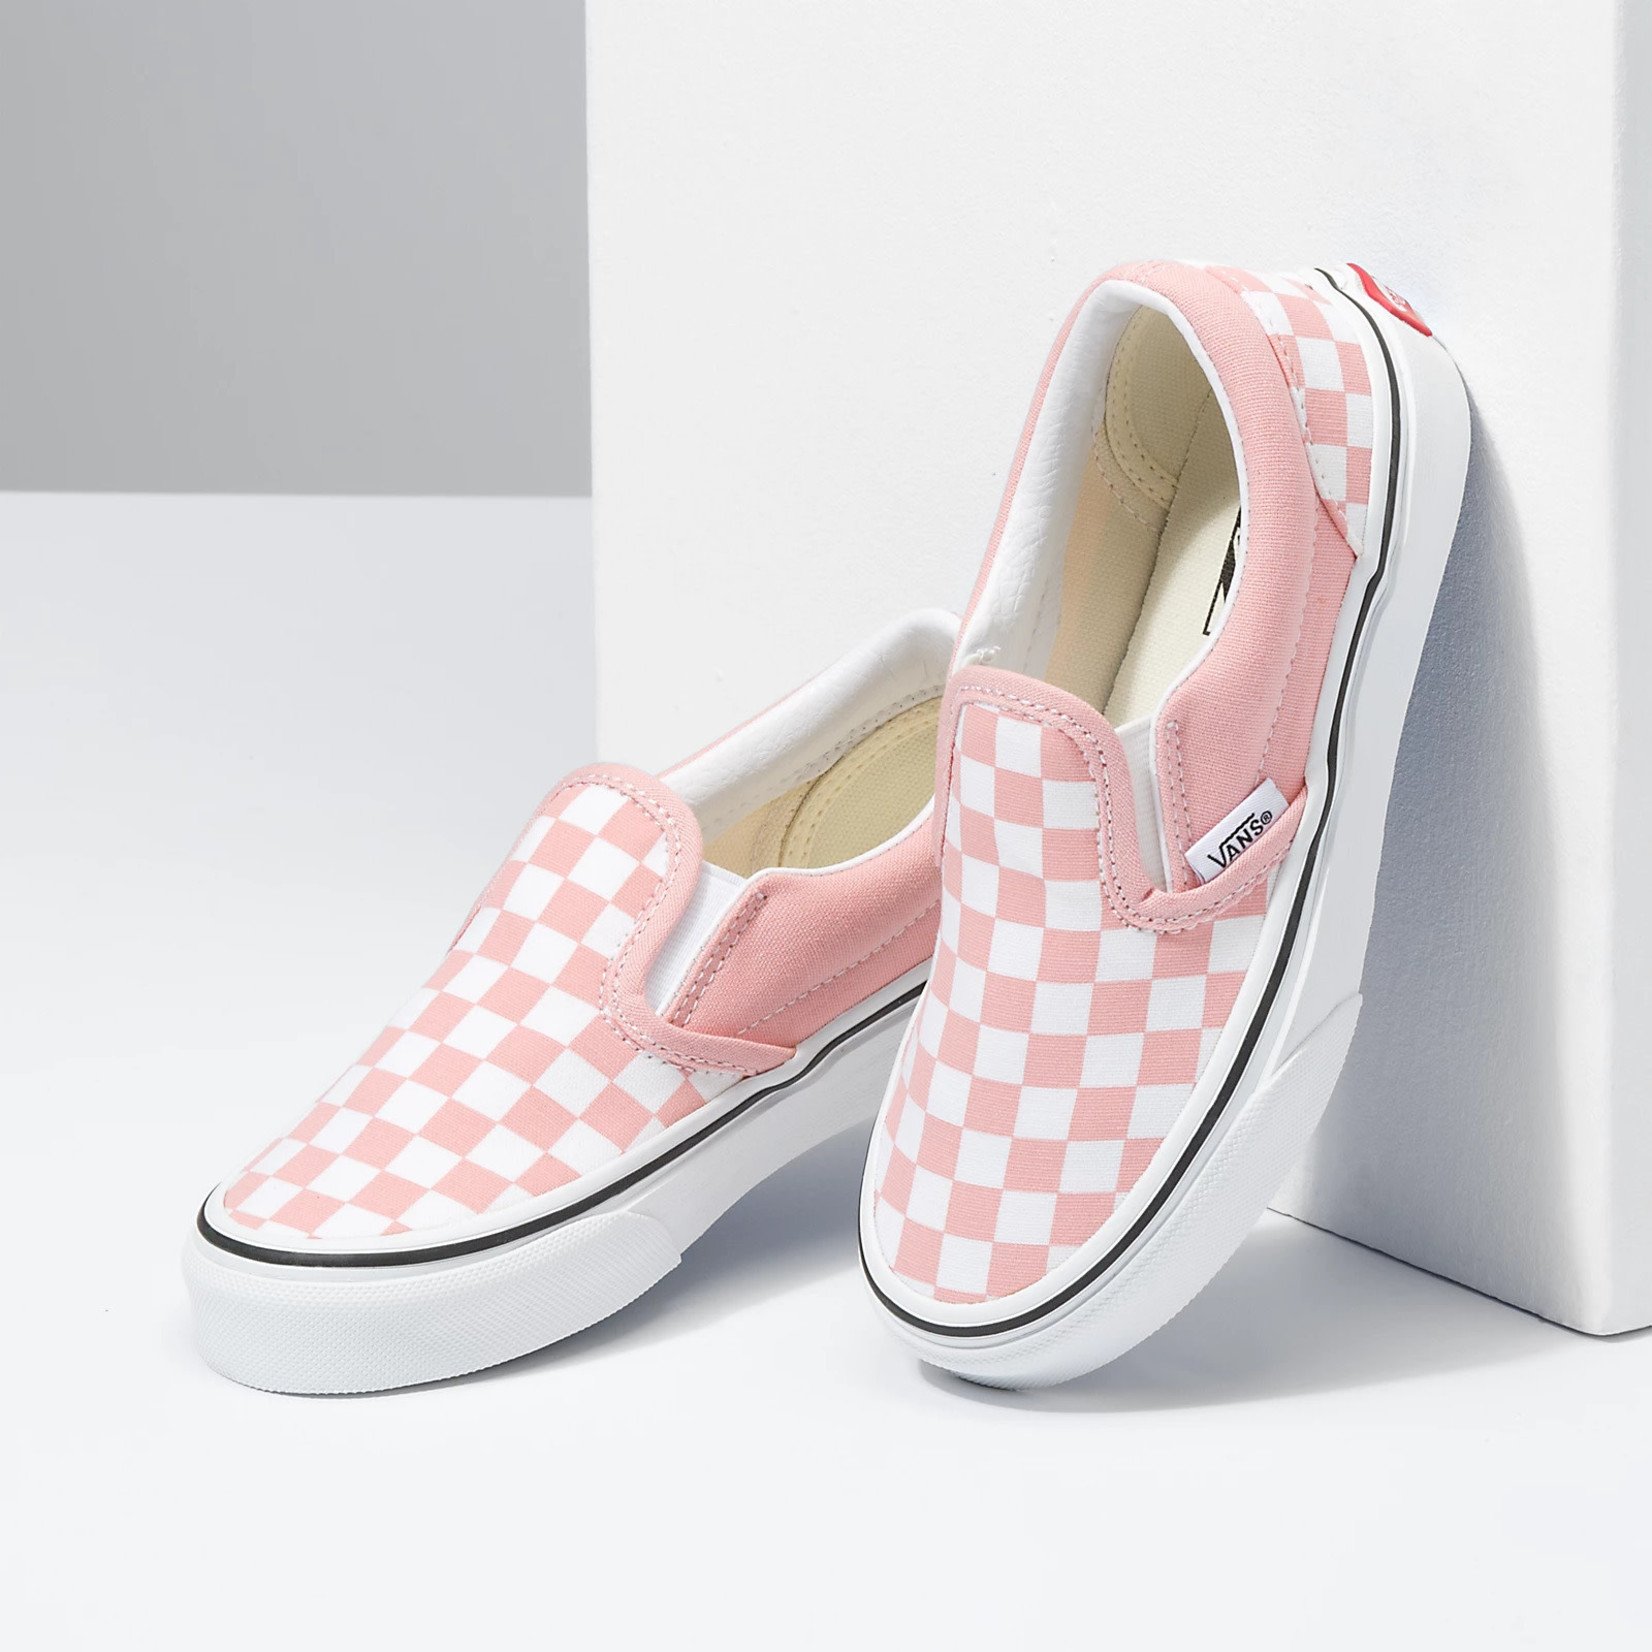 Vans Vans Classic Slip-On Toddler Skate Shoes - Powder Pink/True White